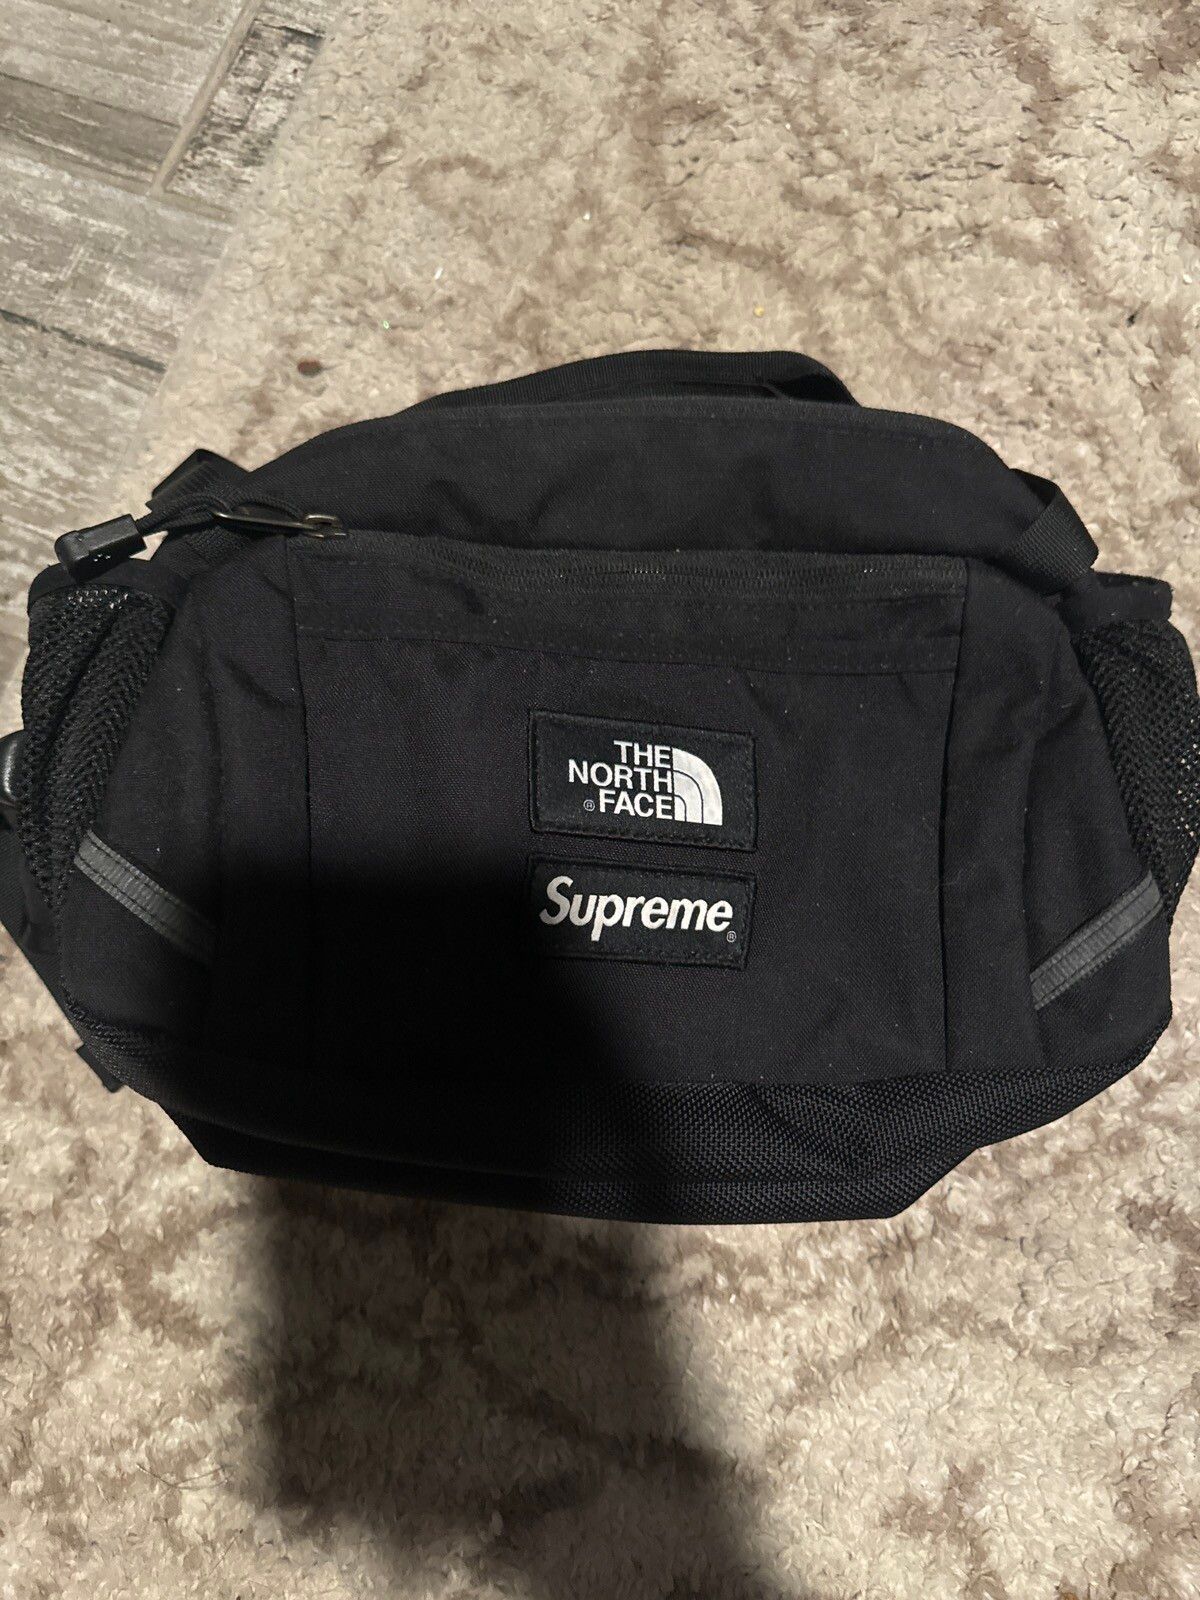 Supreme Supreme x TNF waist bag | Grailed